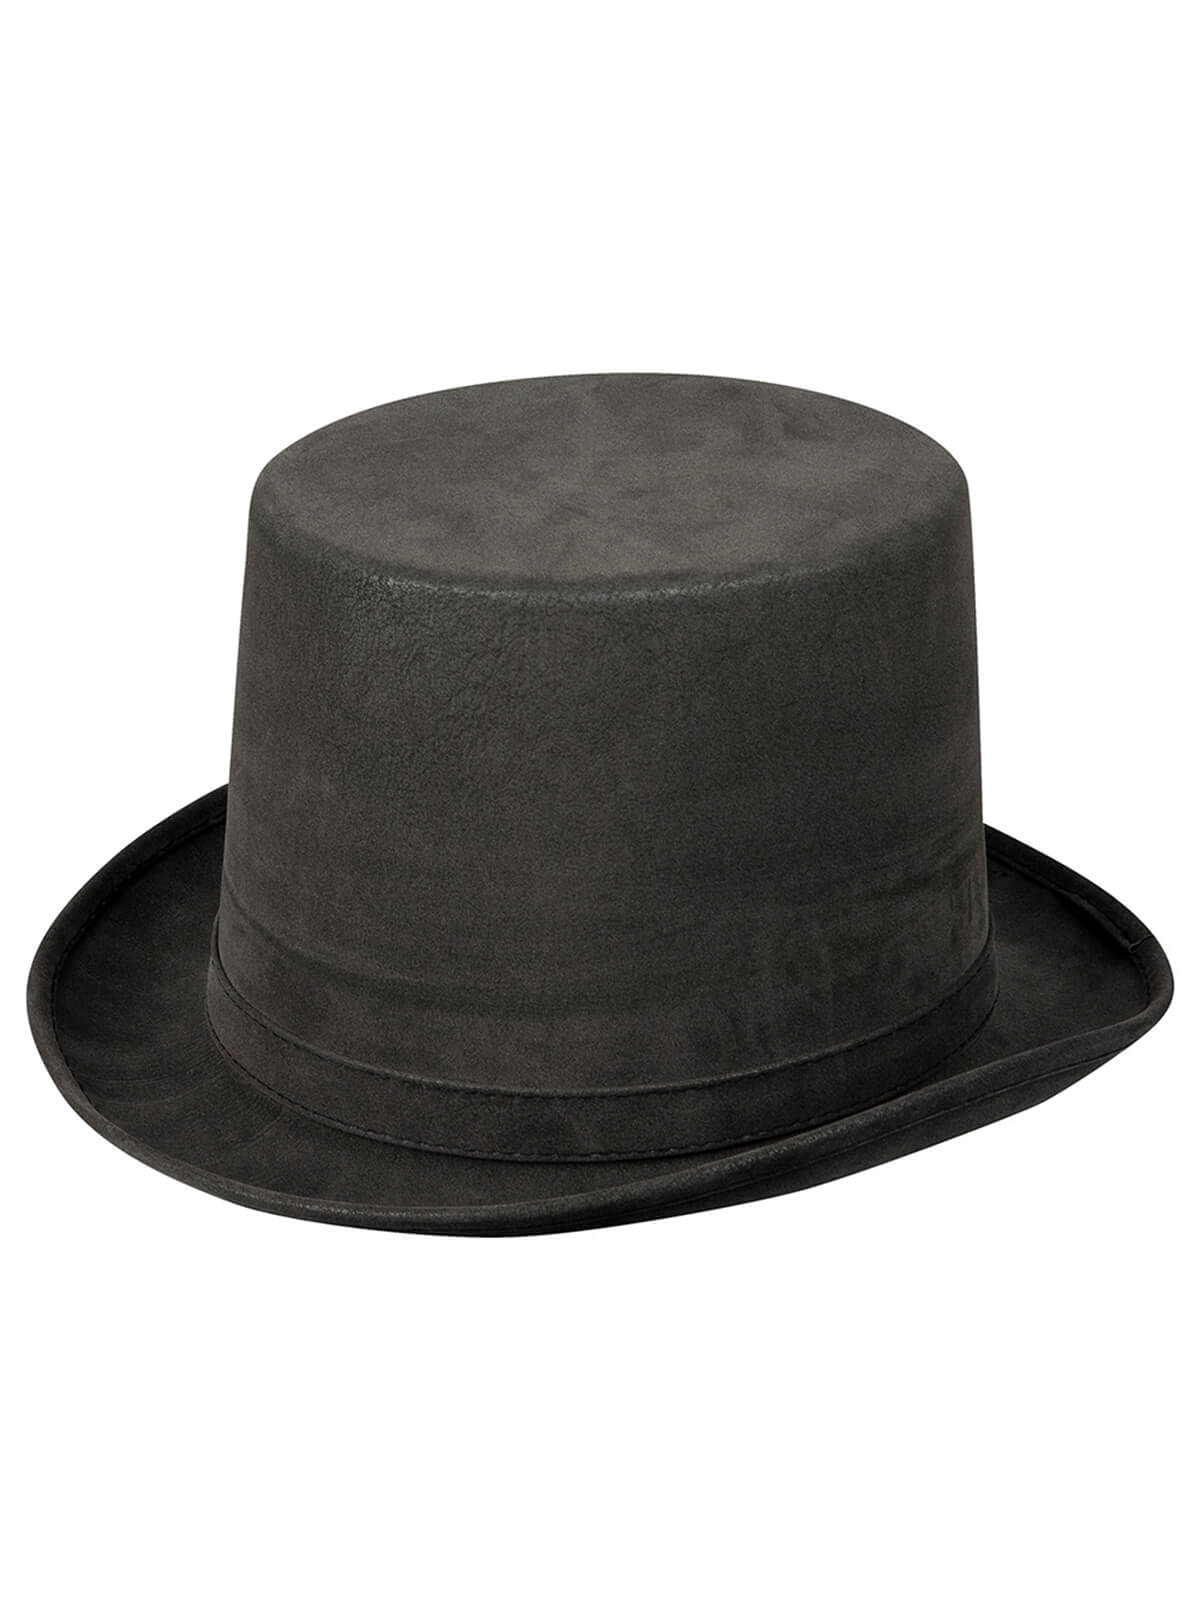 Deluxe Grey Top Hat